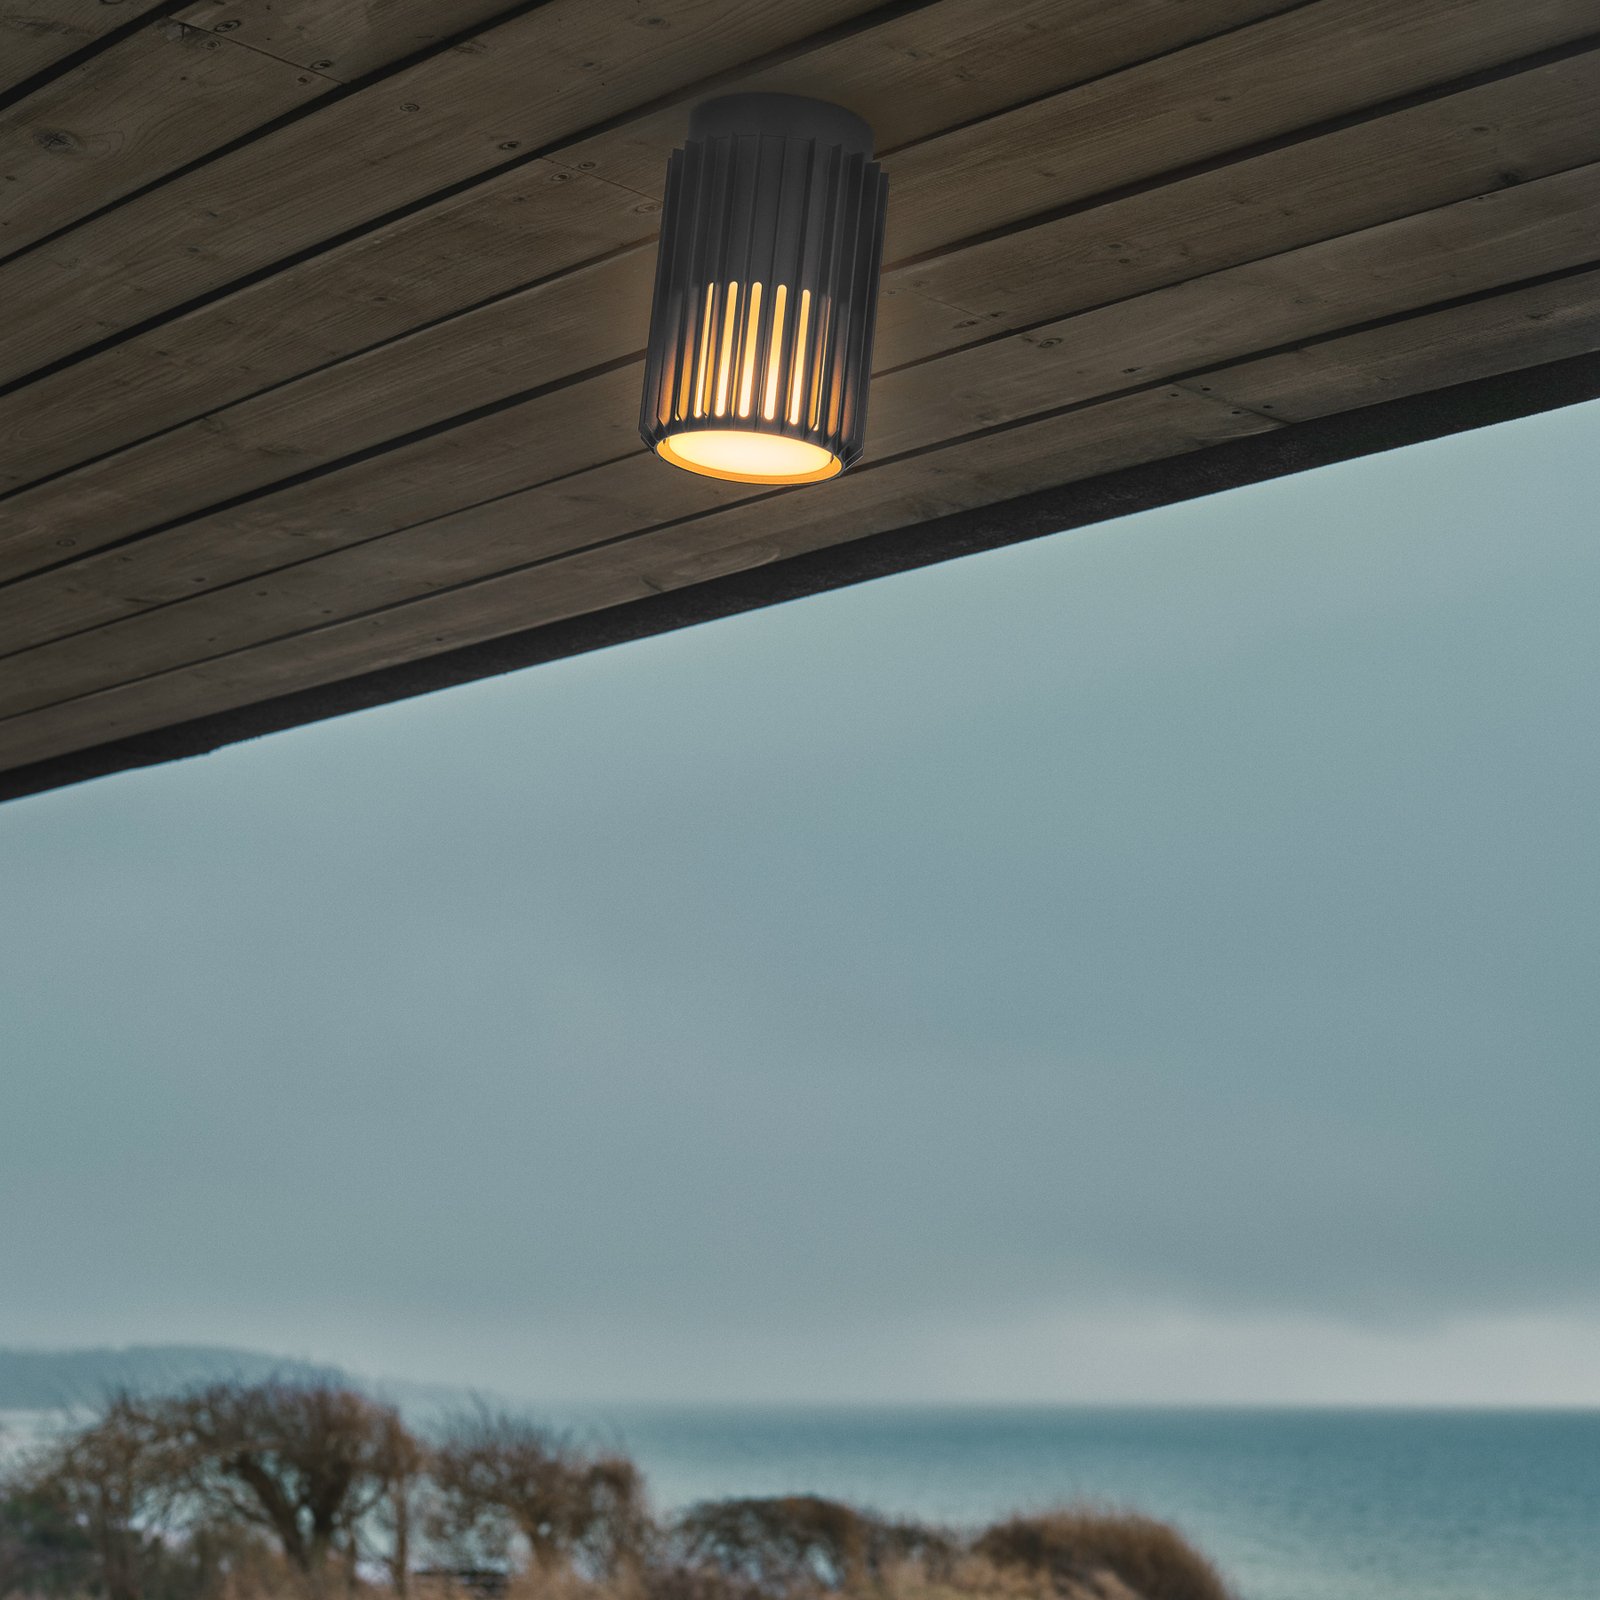 Aludra outdoor ceiling light, IP54, anthracite, aluminium